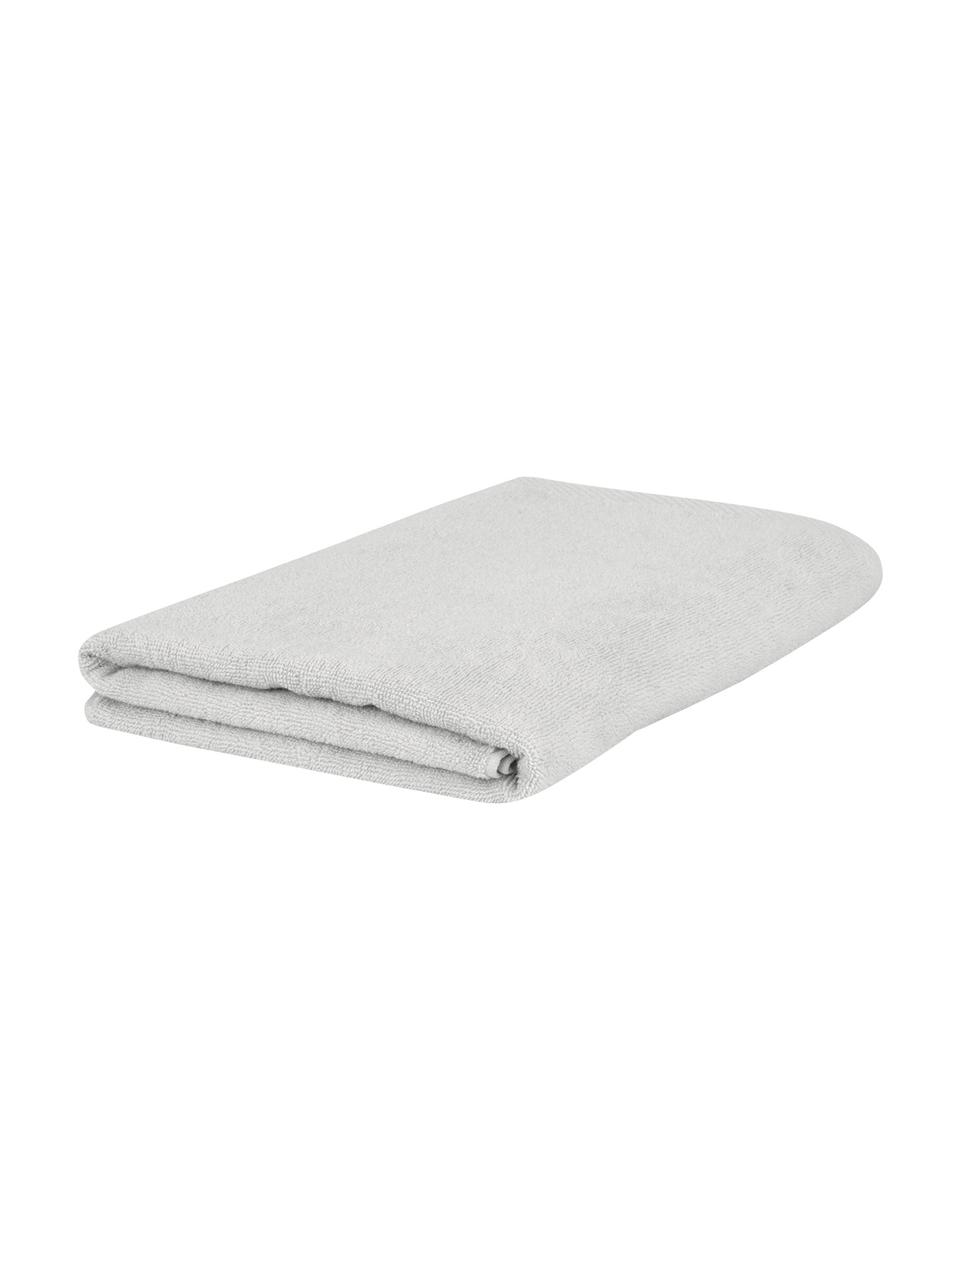 Eenkleurige handdoek Comfort, verschillende formaten, Lichtgrijs, Handdoek, B 50 x L 100 cm, 2 stuks